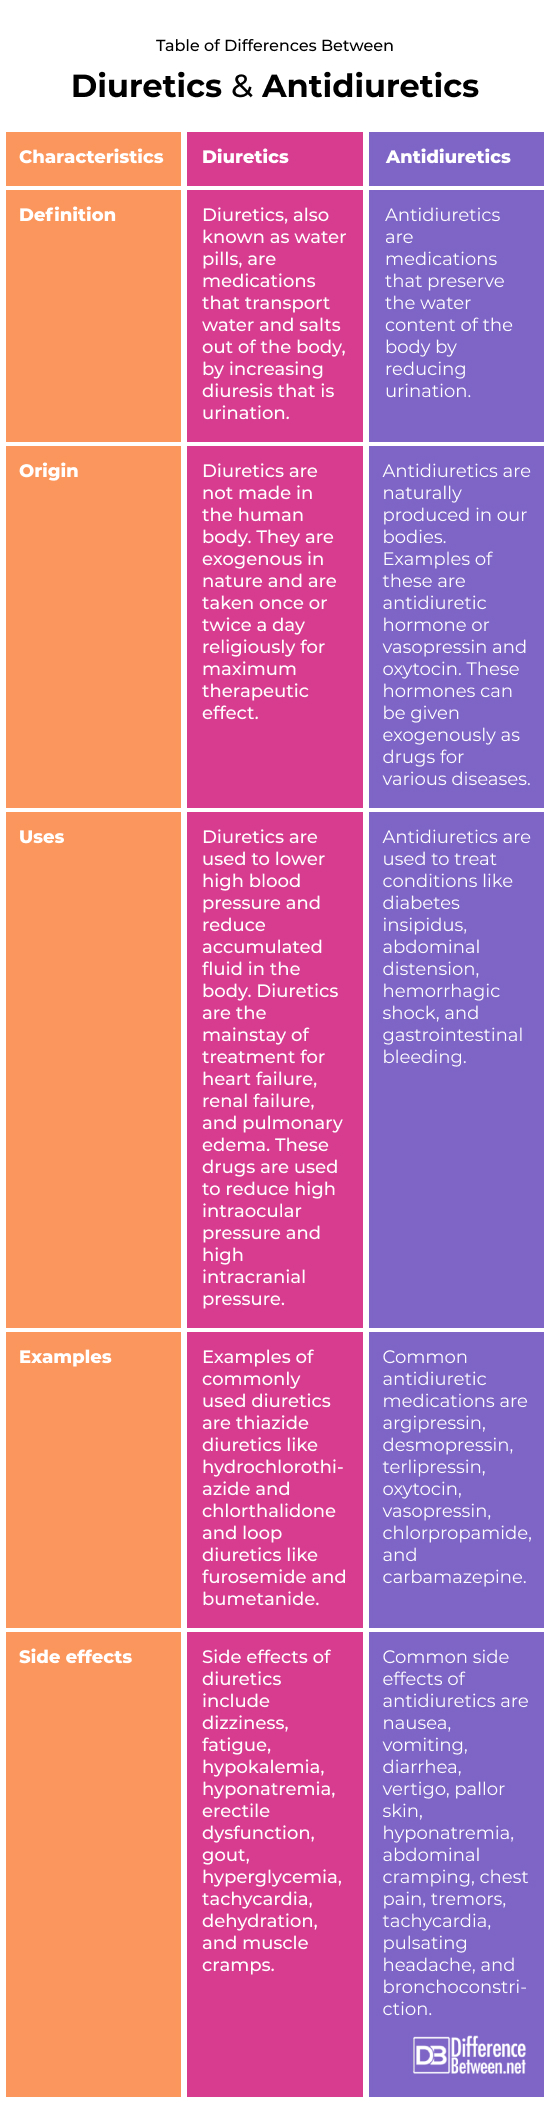 Diuretics and Antidiuretics